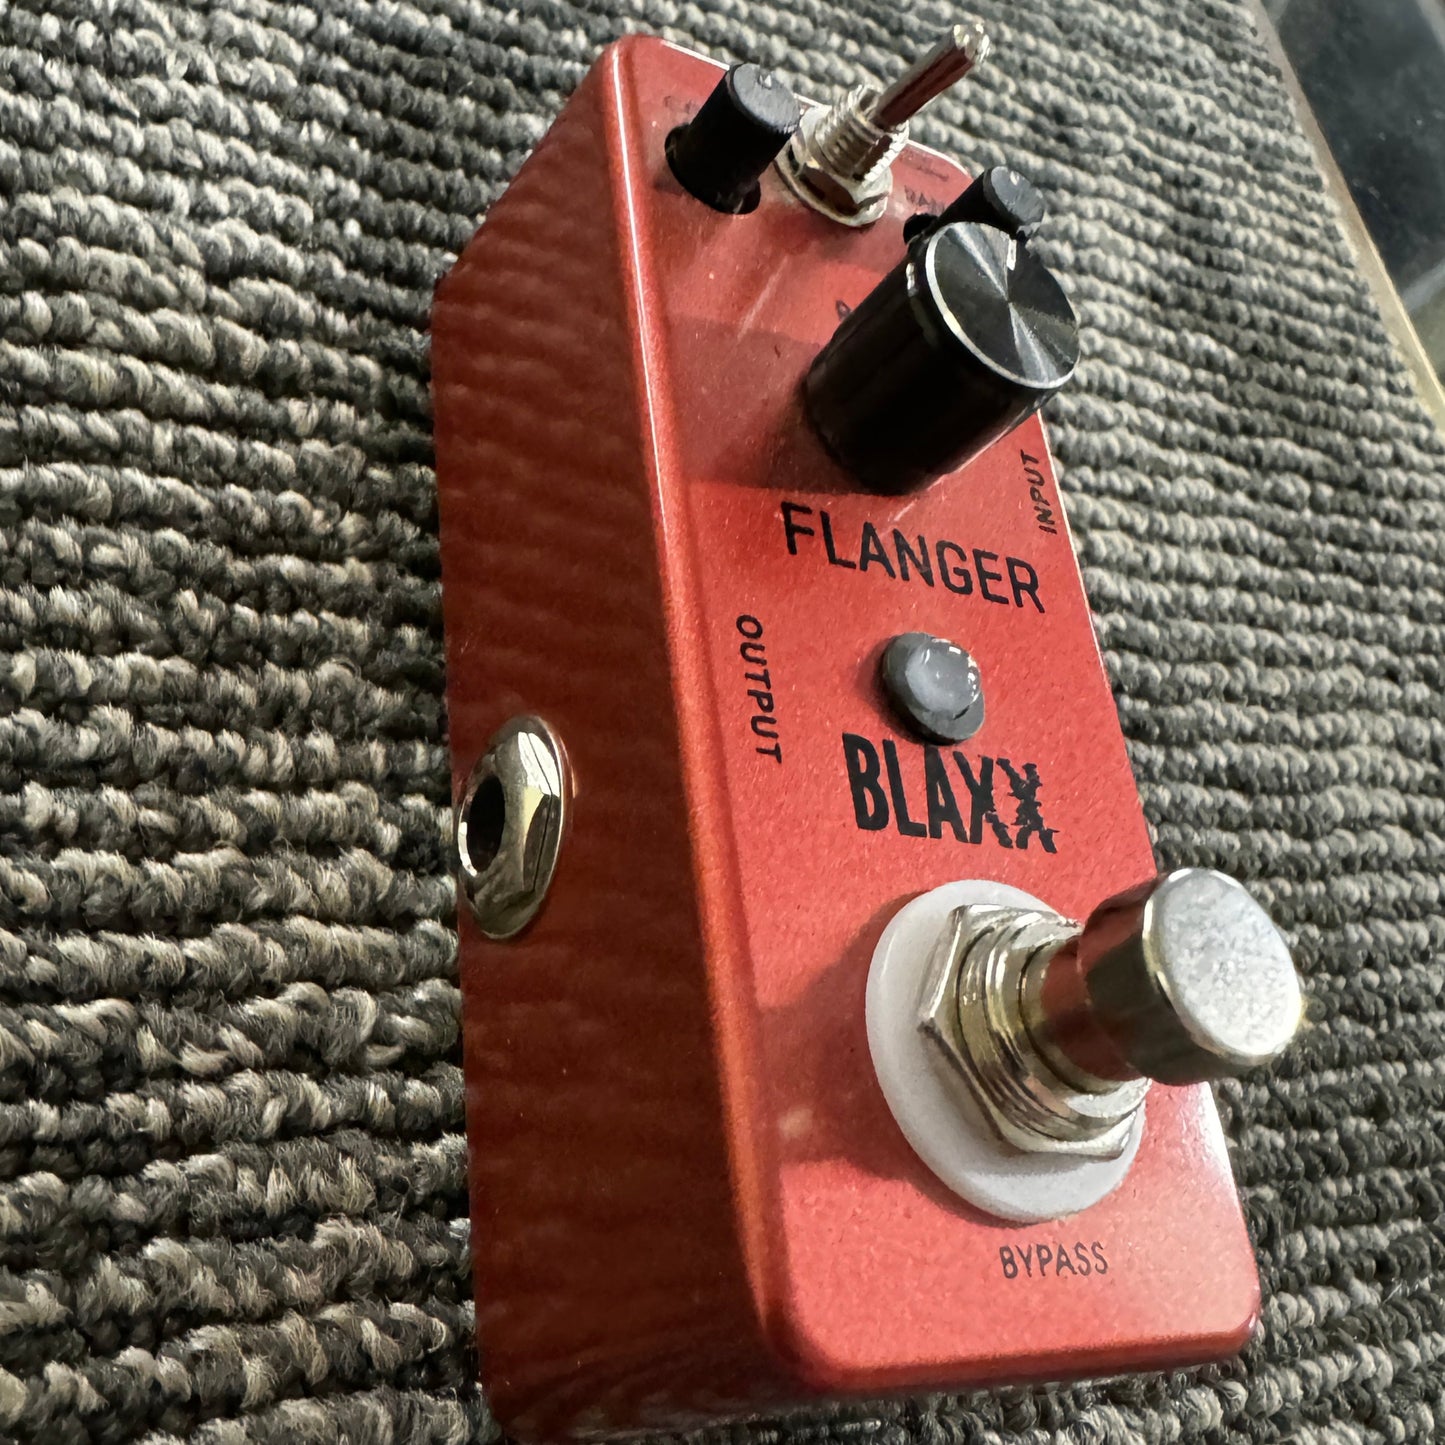 BLAXX Flanger Guitar Pedal BSTOCK